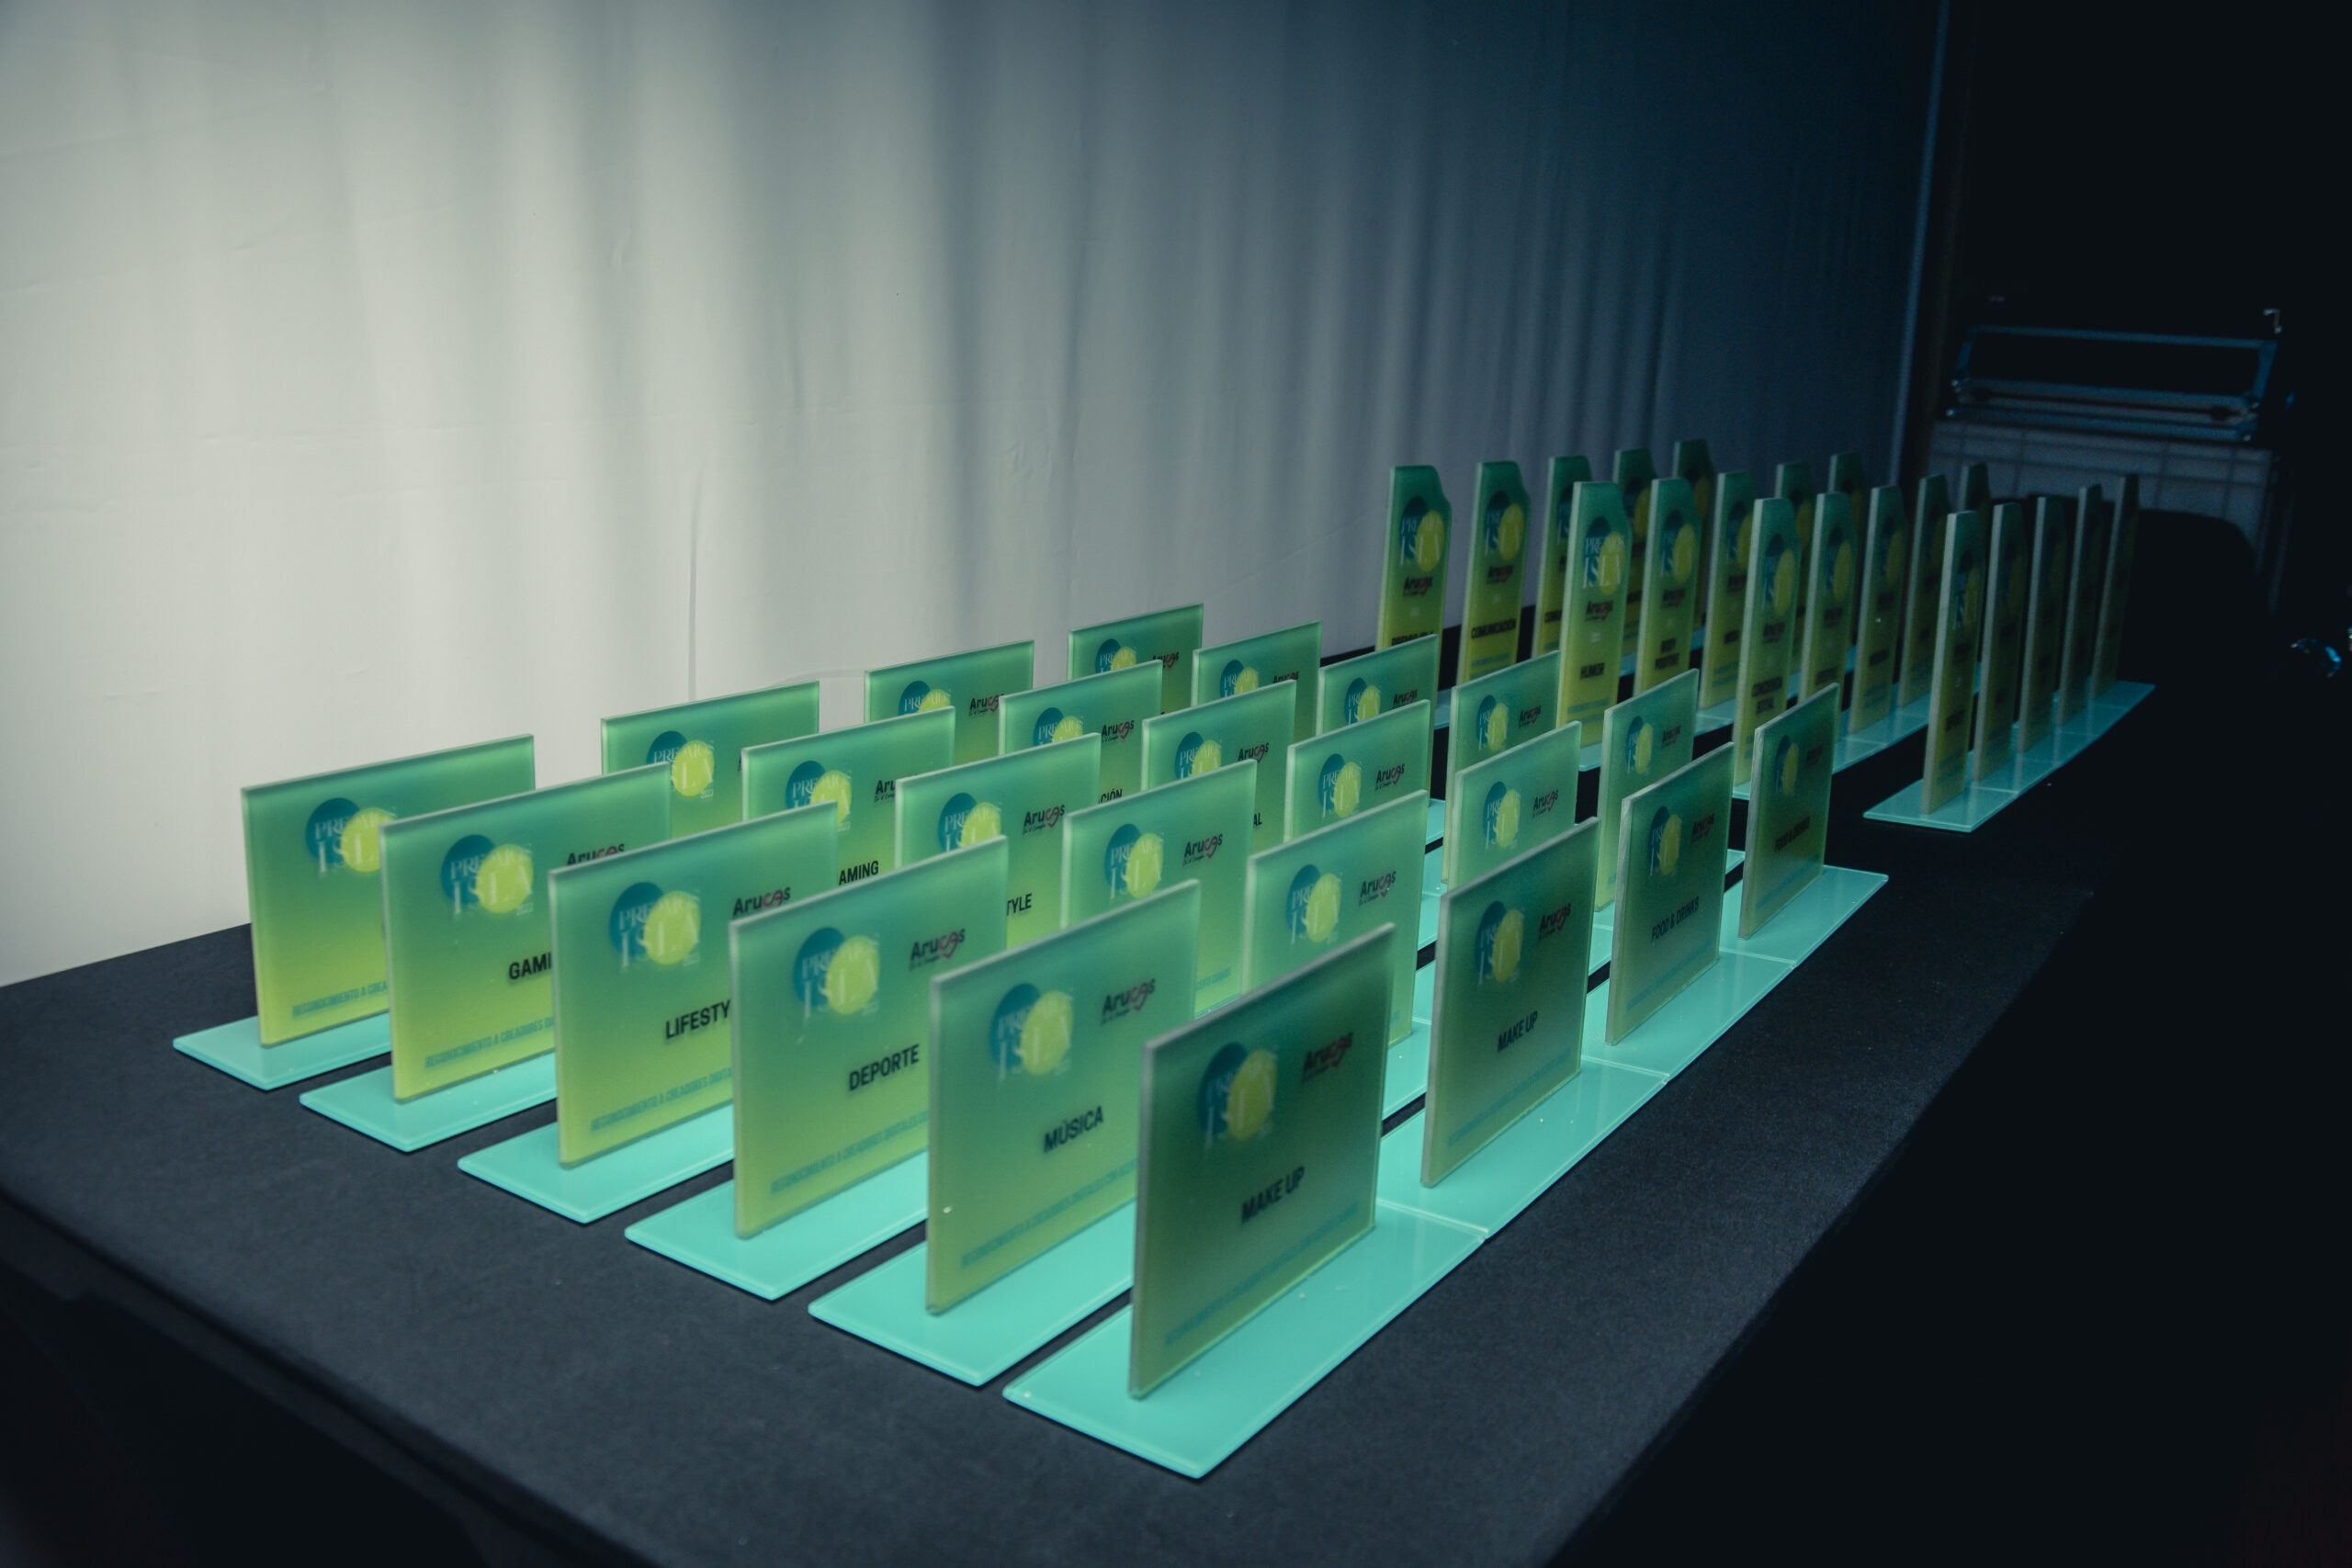 El galardon de Premios ISLA fabricado por artesanos canarios